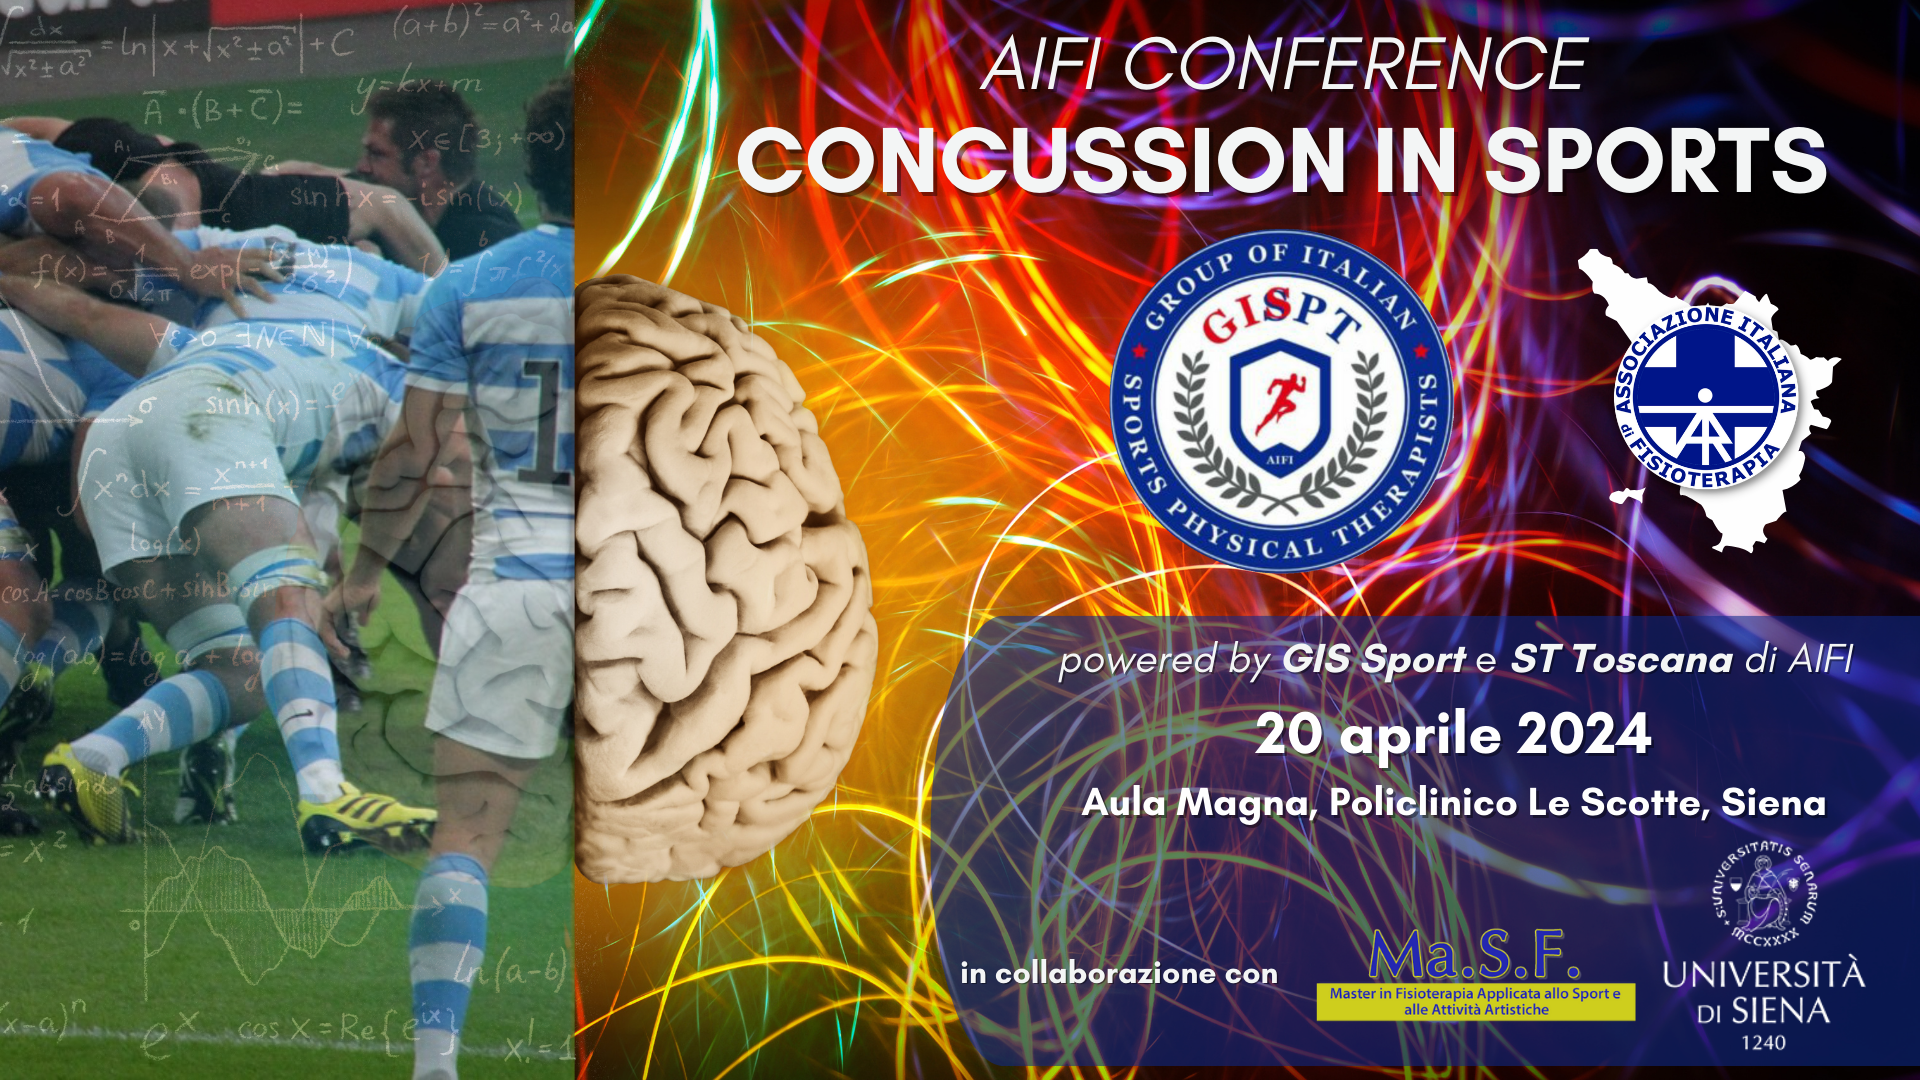 AIFI Conference GIS Sport “Concussion in Sports” sabato 20 aprile 2024 a Siena